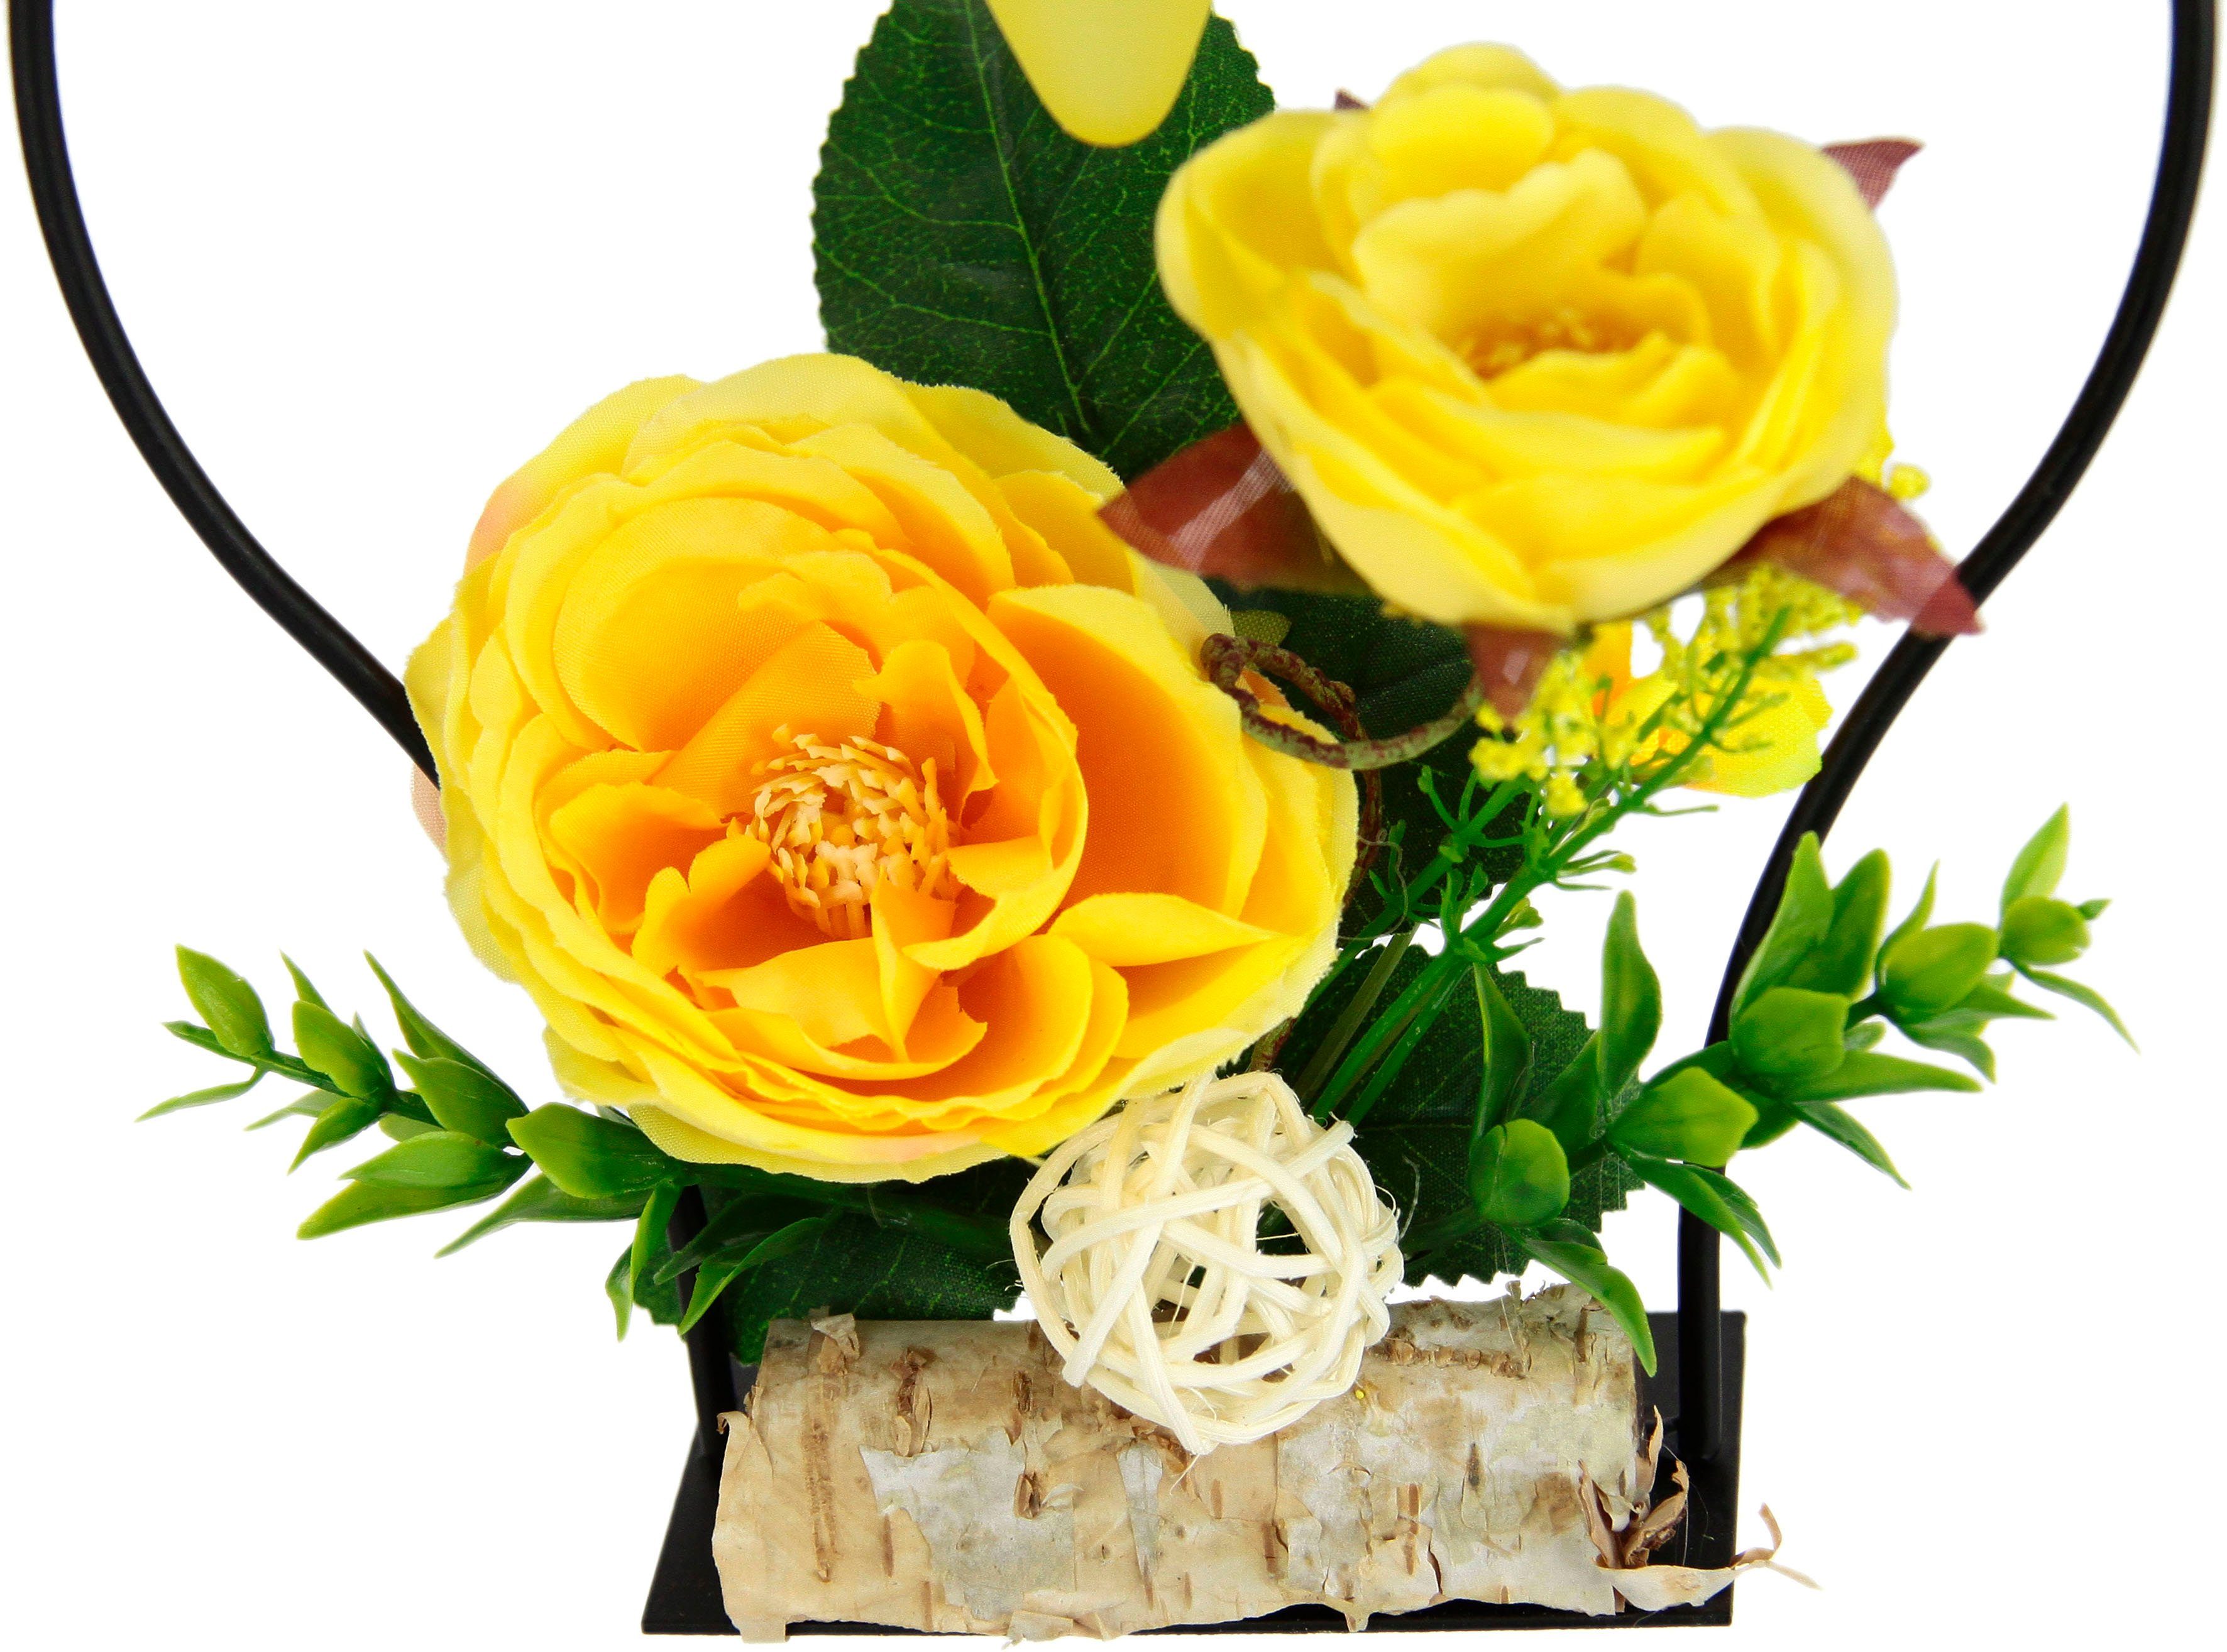 3D Teelichthalter Metall I.GE.A. gelb Glaseinsatz Teelichtkerze Rose, Kerzenständer Kunstblumen Advent